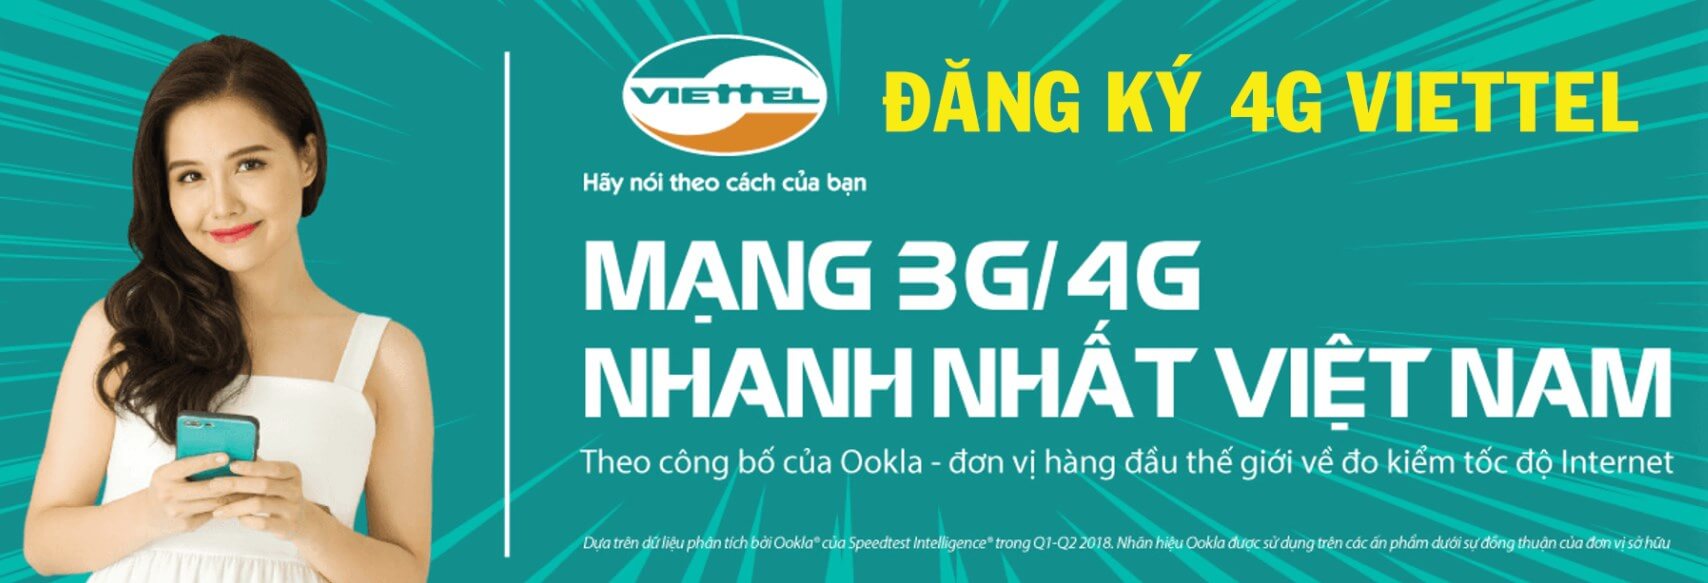 Cách đăng ký 4G Viettel giá rẻ từ 5K 20K có ngay data tốc độ cao